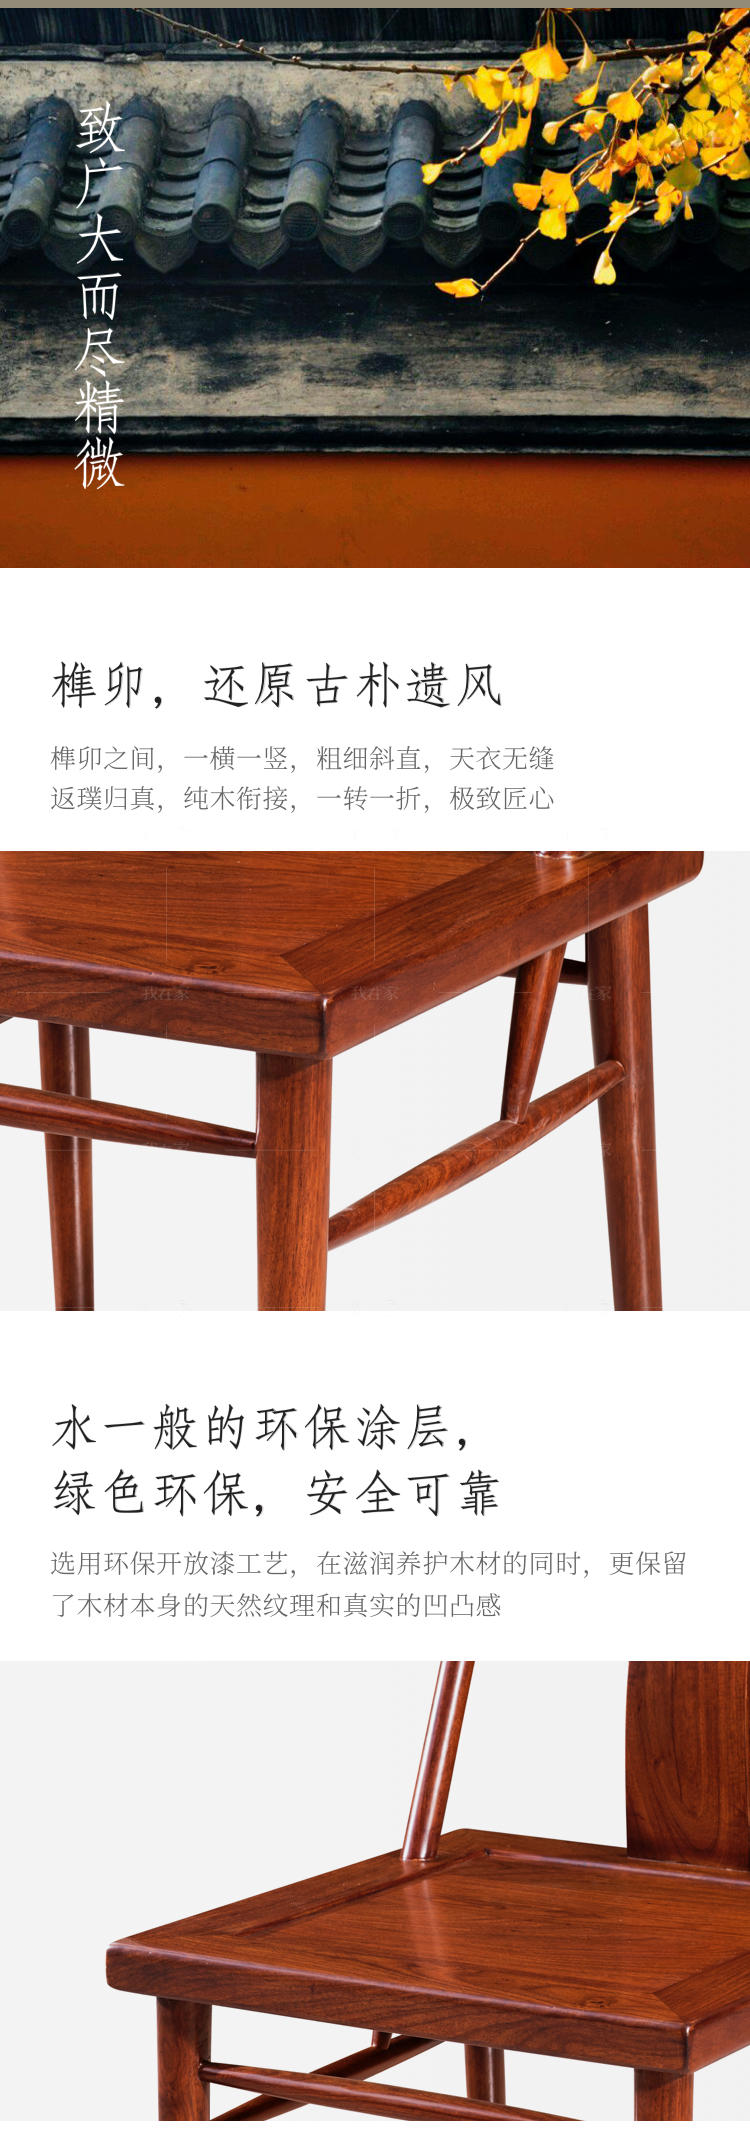 新古典中式风格独尊餐椅的家具详细介绍